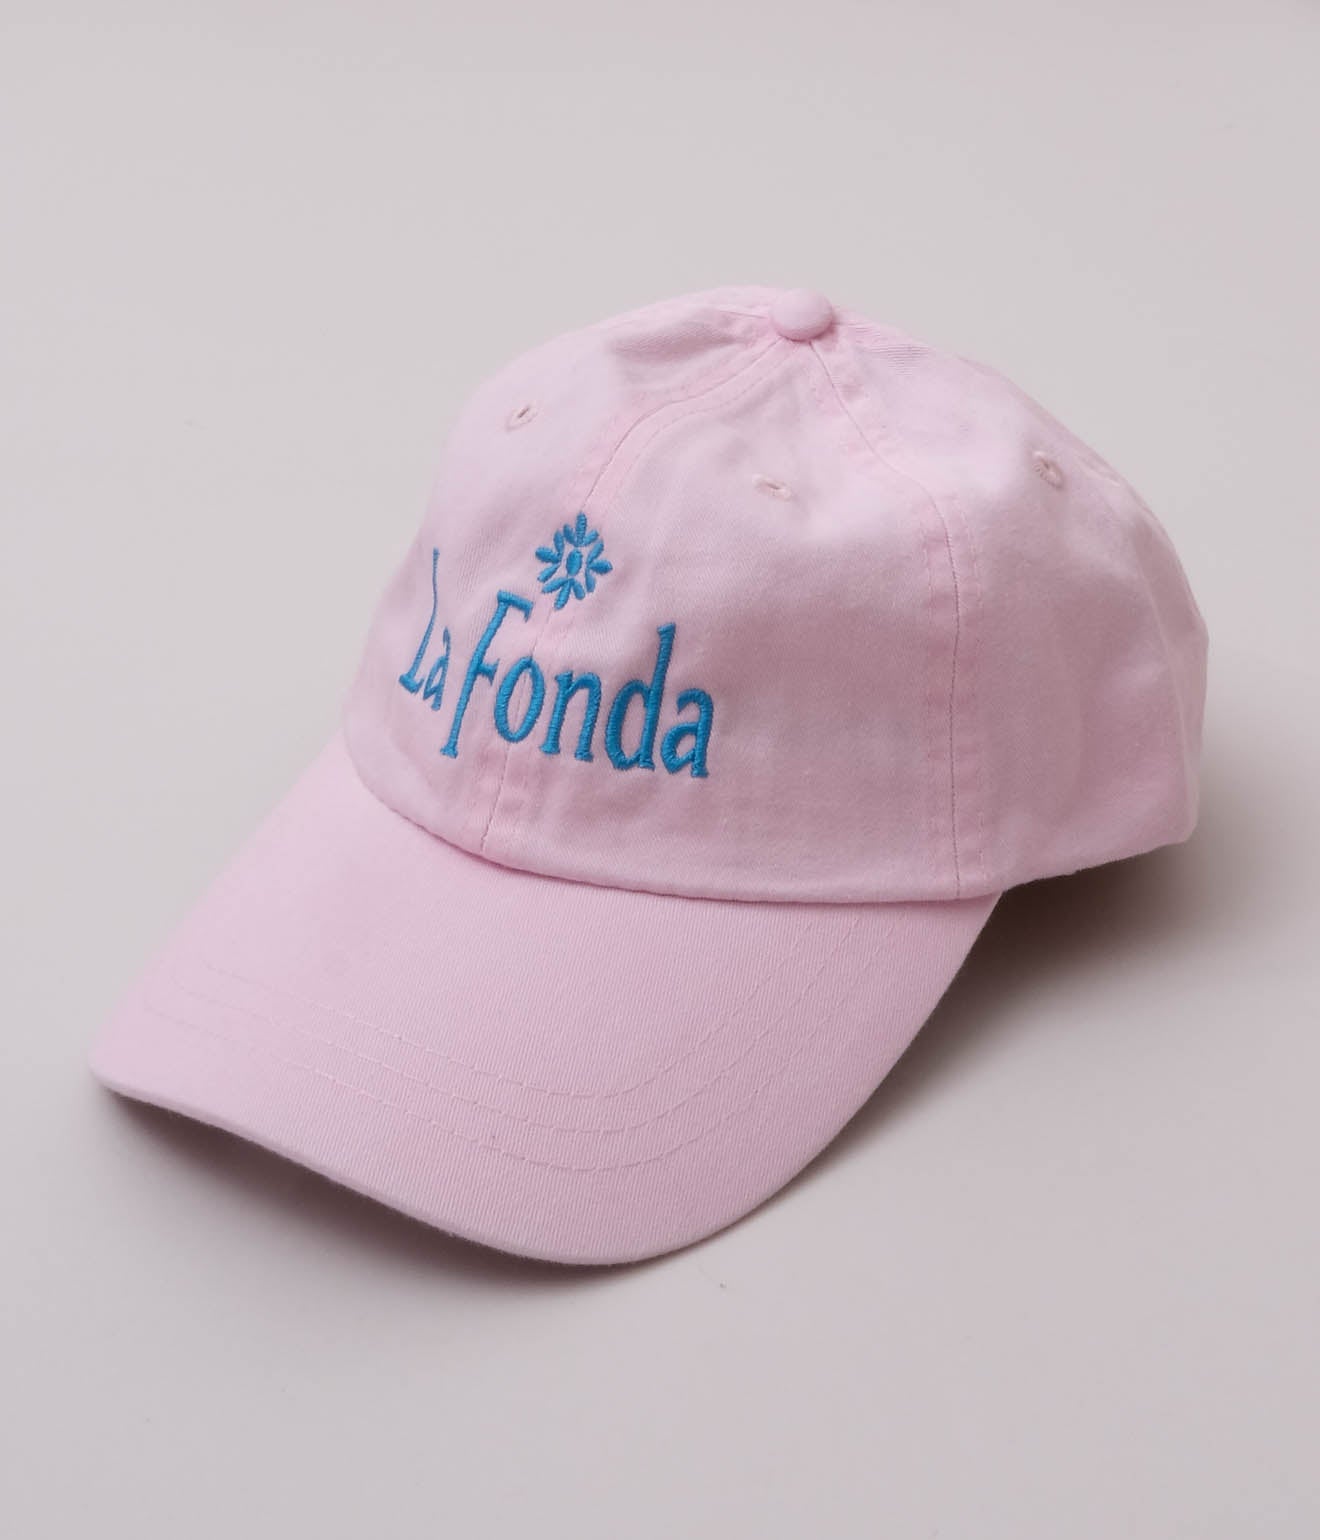 Souvenir Goods "La Fonda Hotel Cap" (Pink)